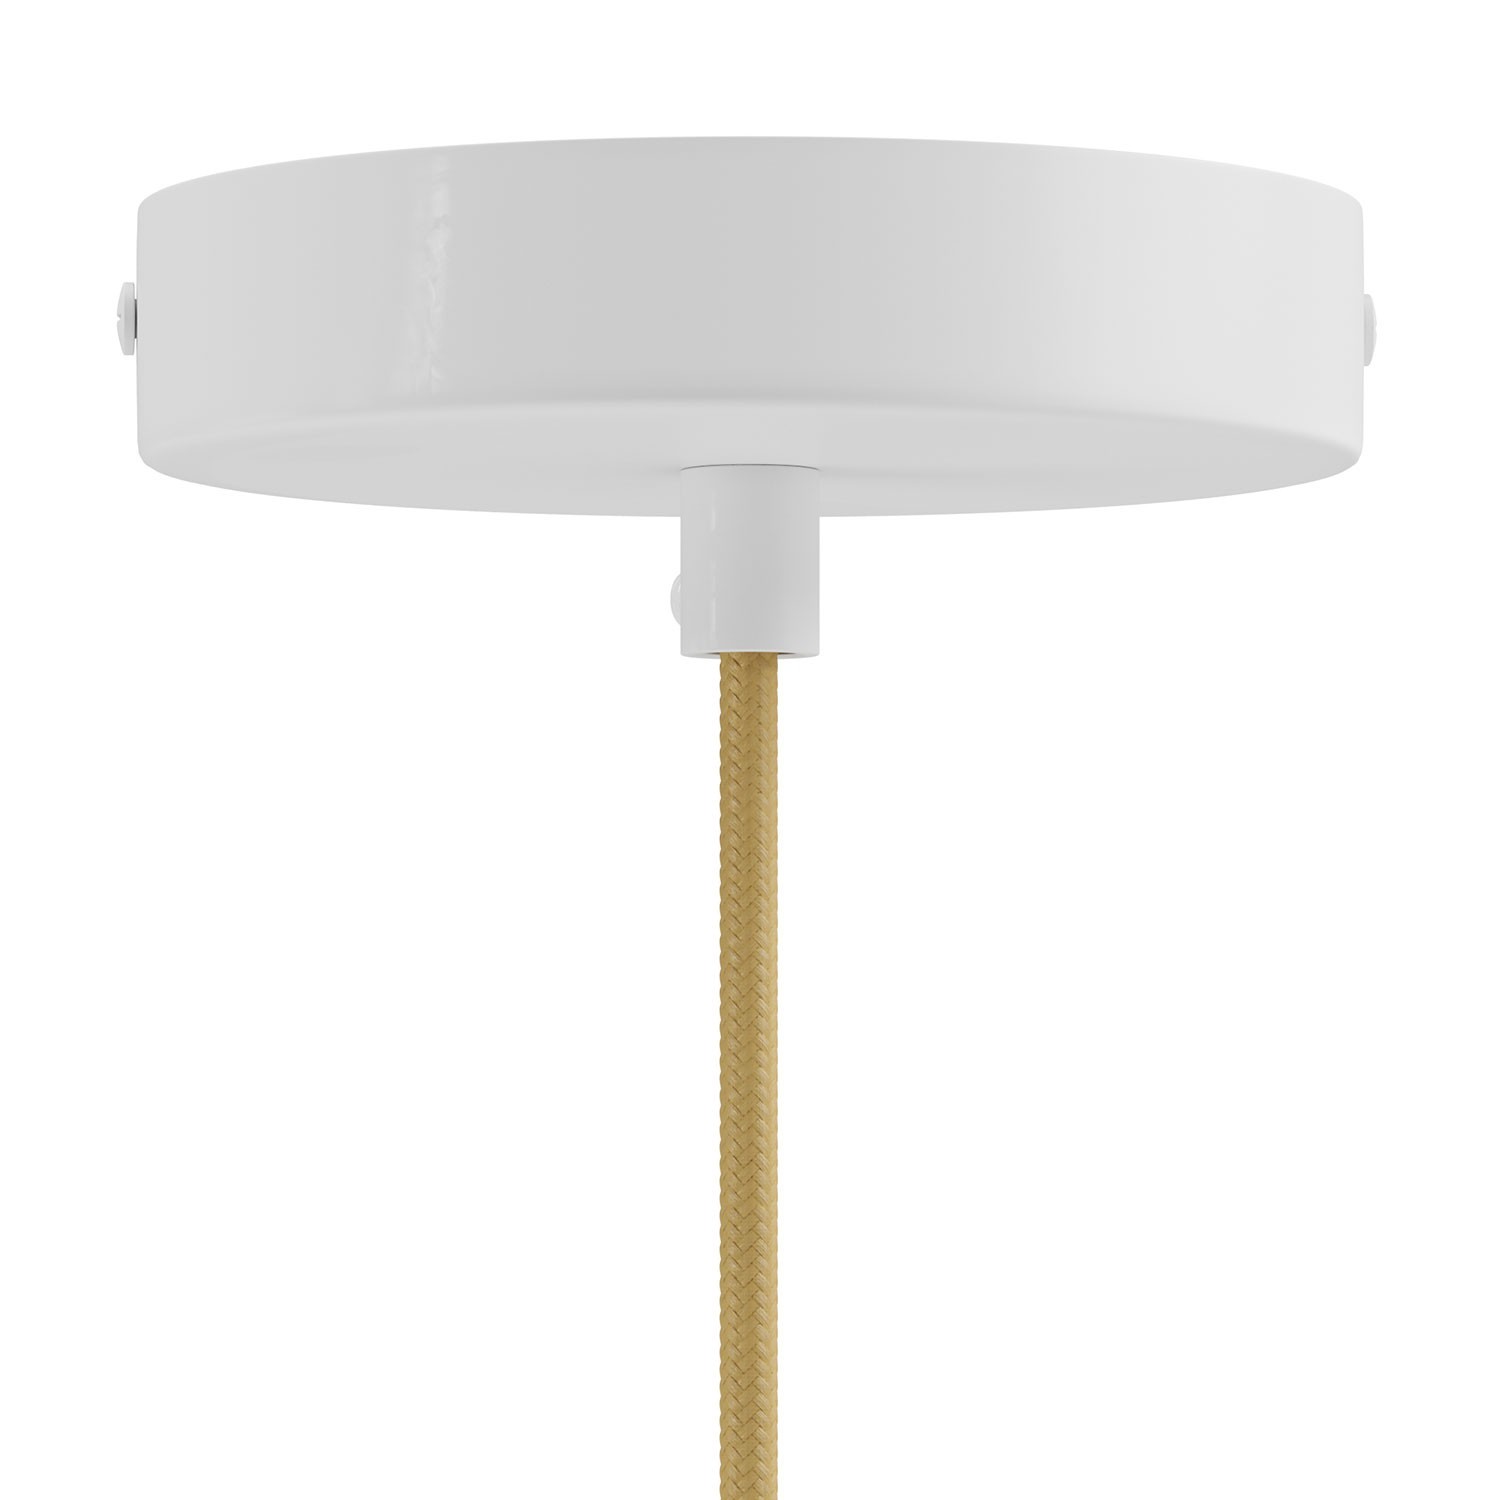 Hanglamp Made in Italy compleet met strijkijzerkabel, Swing Pastel lampenkap, met metalen afwerkingen